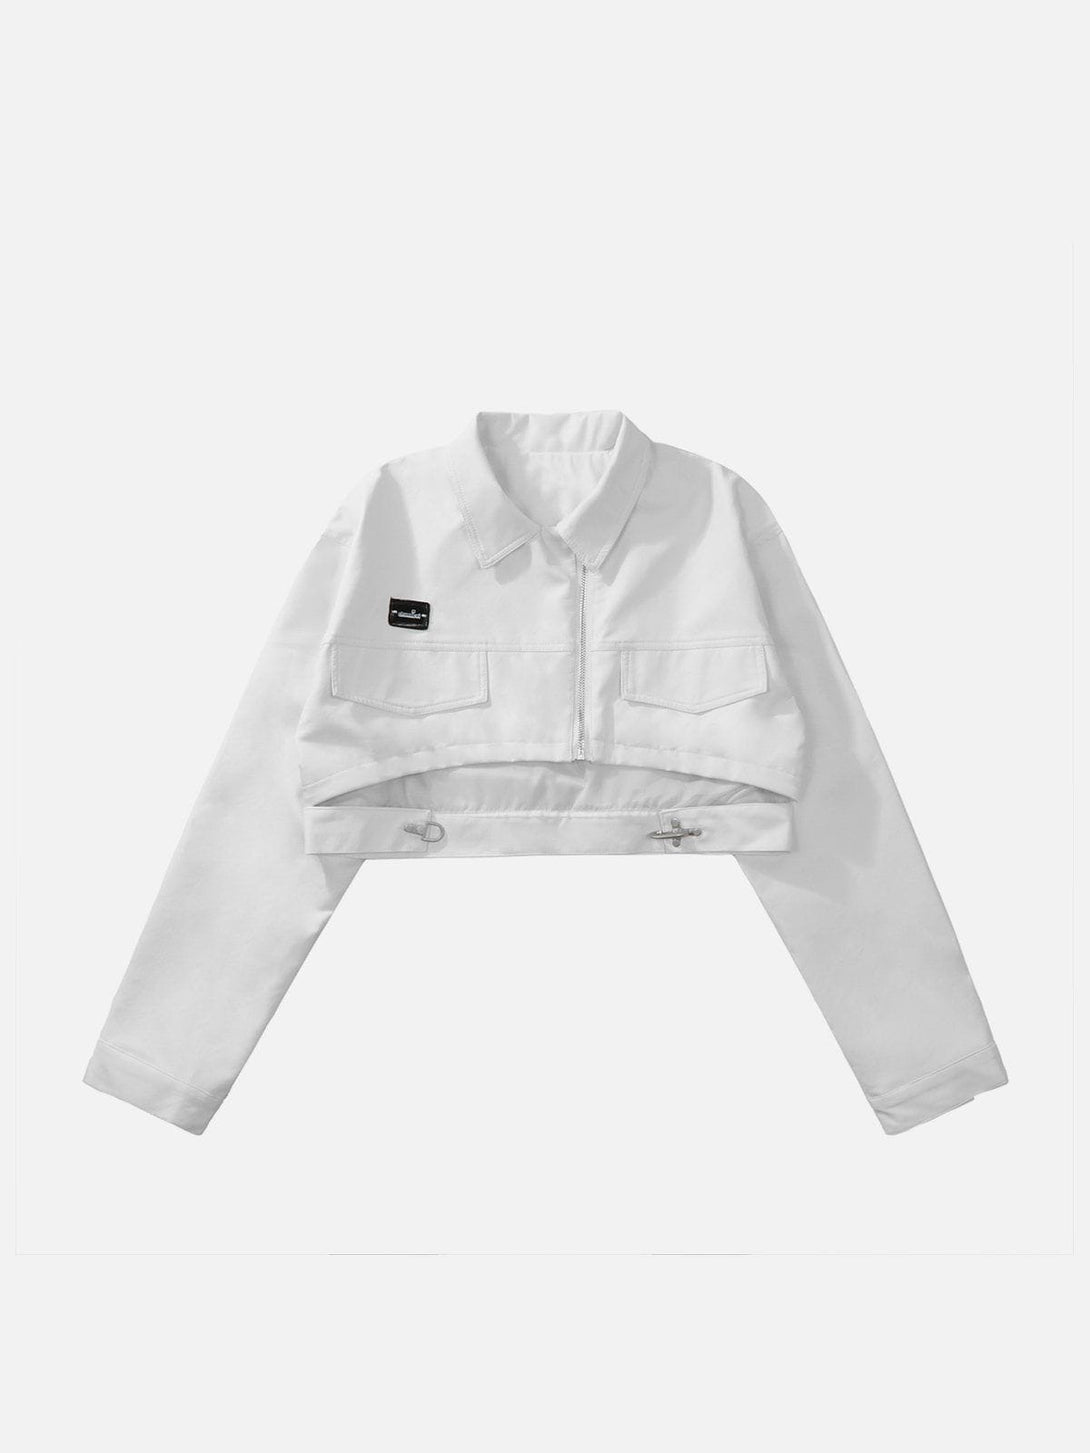 Levefly - Short PU Jacket - Streetwear Fashion - levefly.com